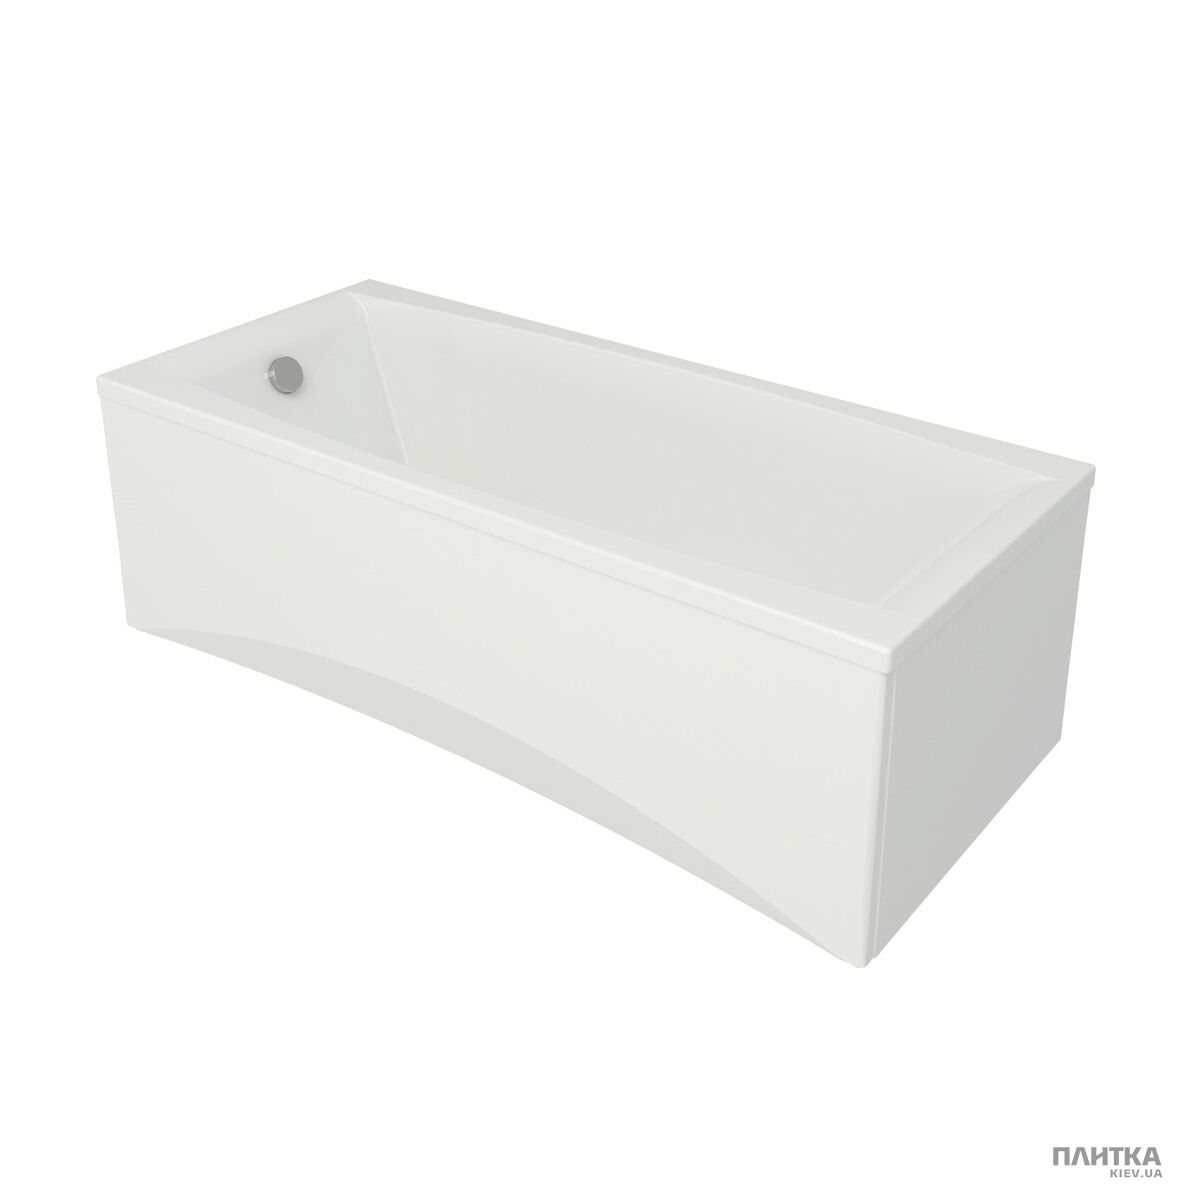 Акриловая ванна Cersanit Virgo 180x80 см белый